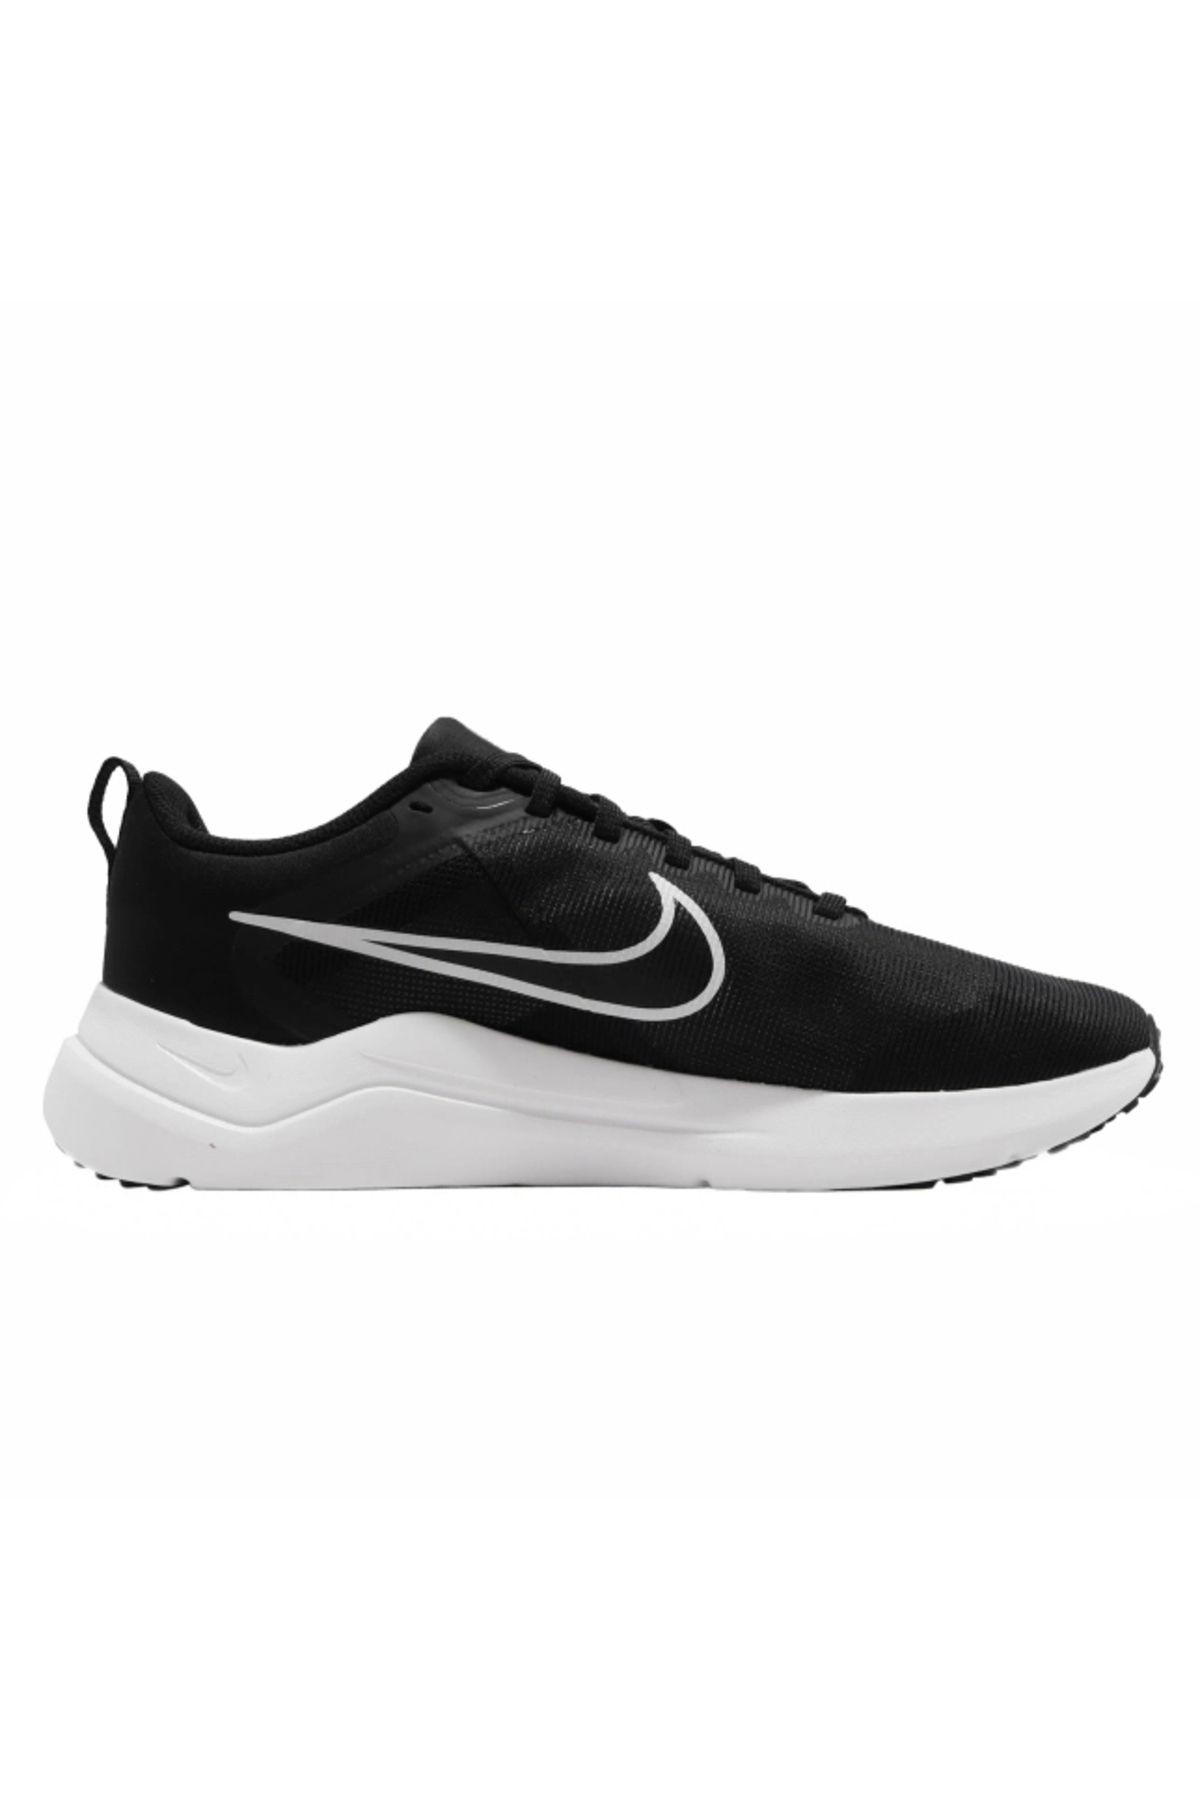 Nike Downshıfter 12 Erkek Koşu Yürüyüş Ayakkabısı Dd9293-001